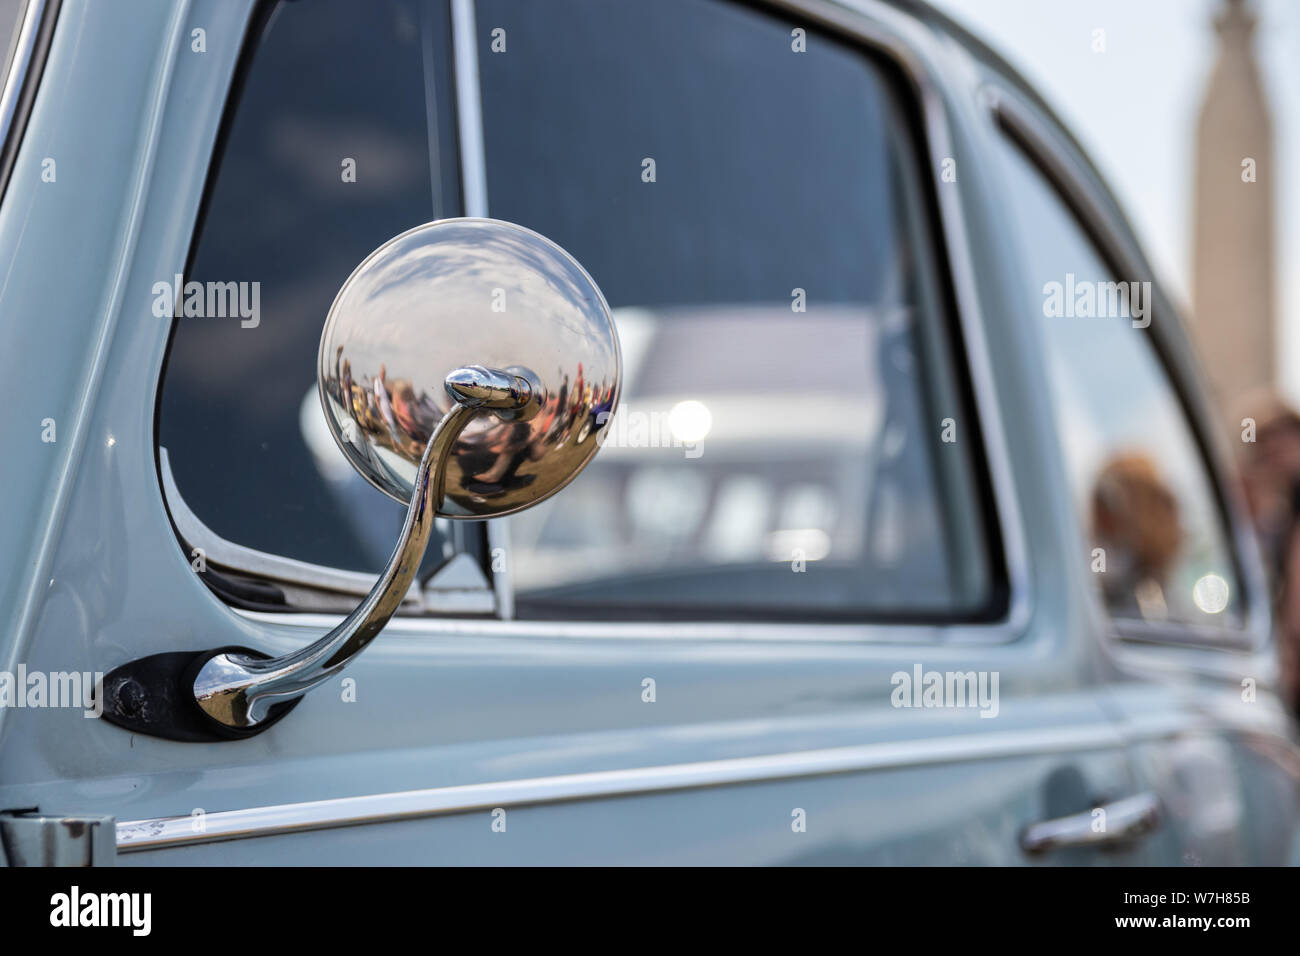 Vieille Voiture Classique Avec Le Miroir D'aile De Chrome Photo stock -  Image du voiture, transport: 195294426